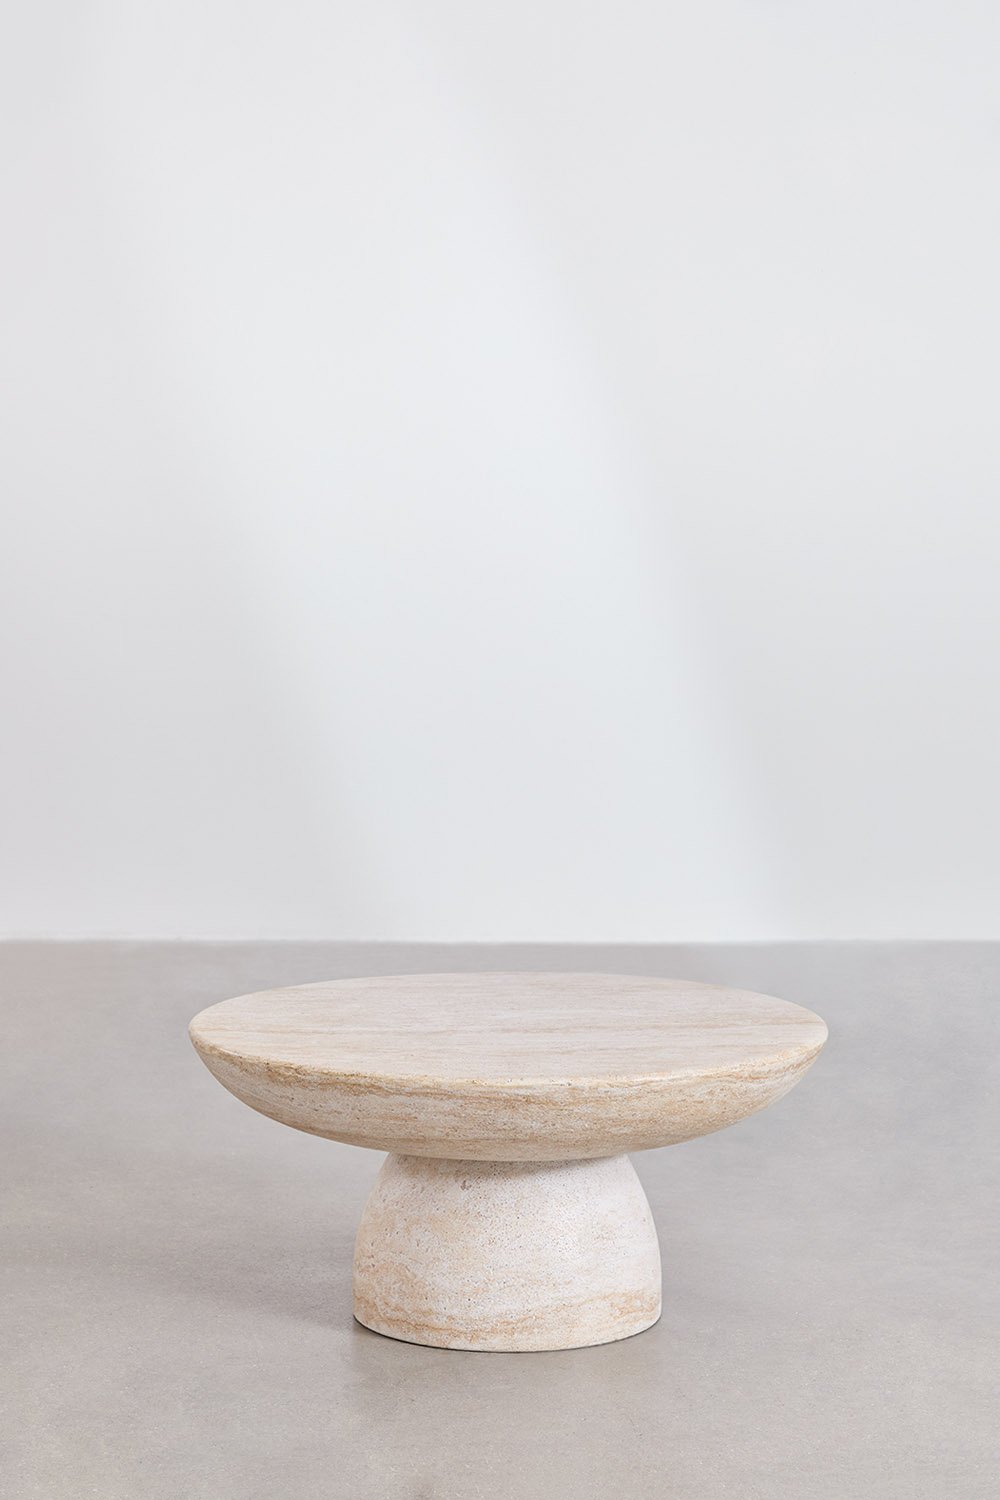 Ronde salontafel in travertin-look beton (Ø70 cm) Velia, galerij beeld 1